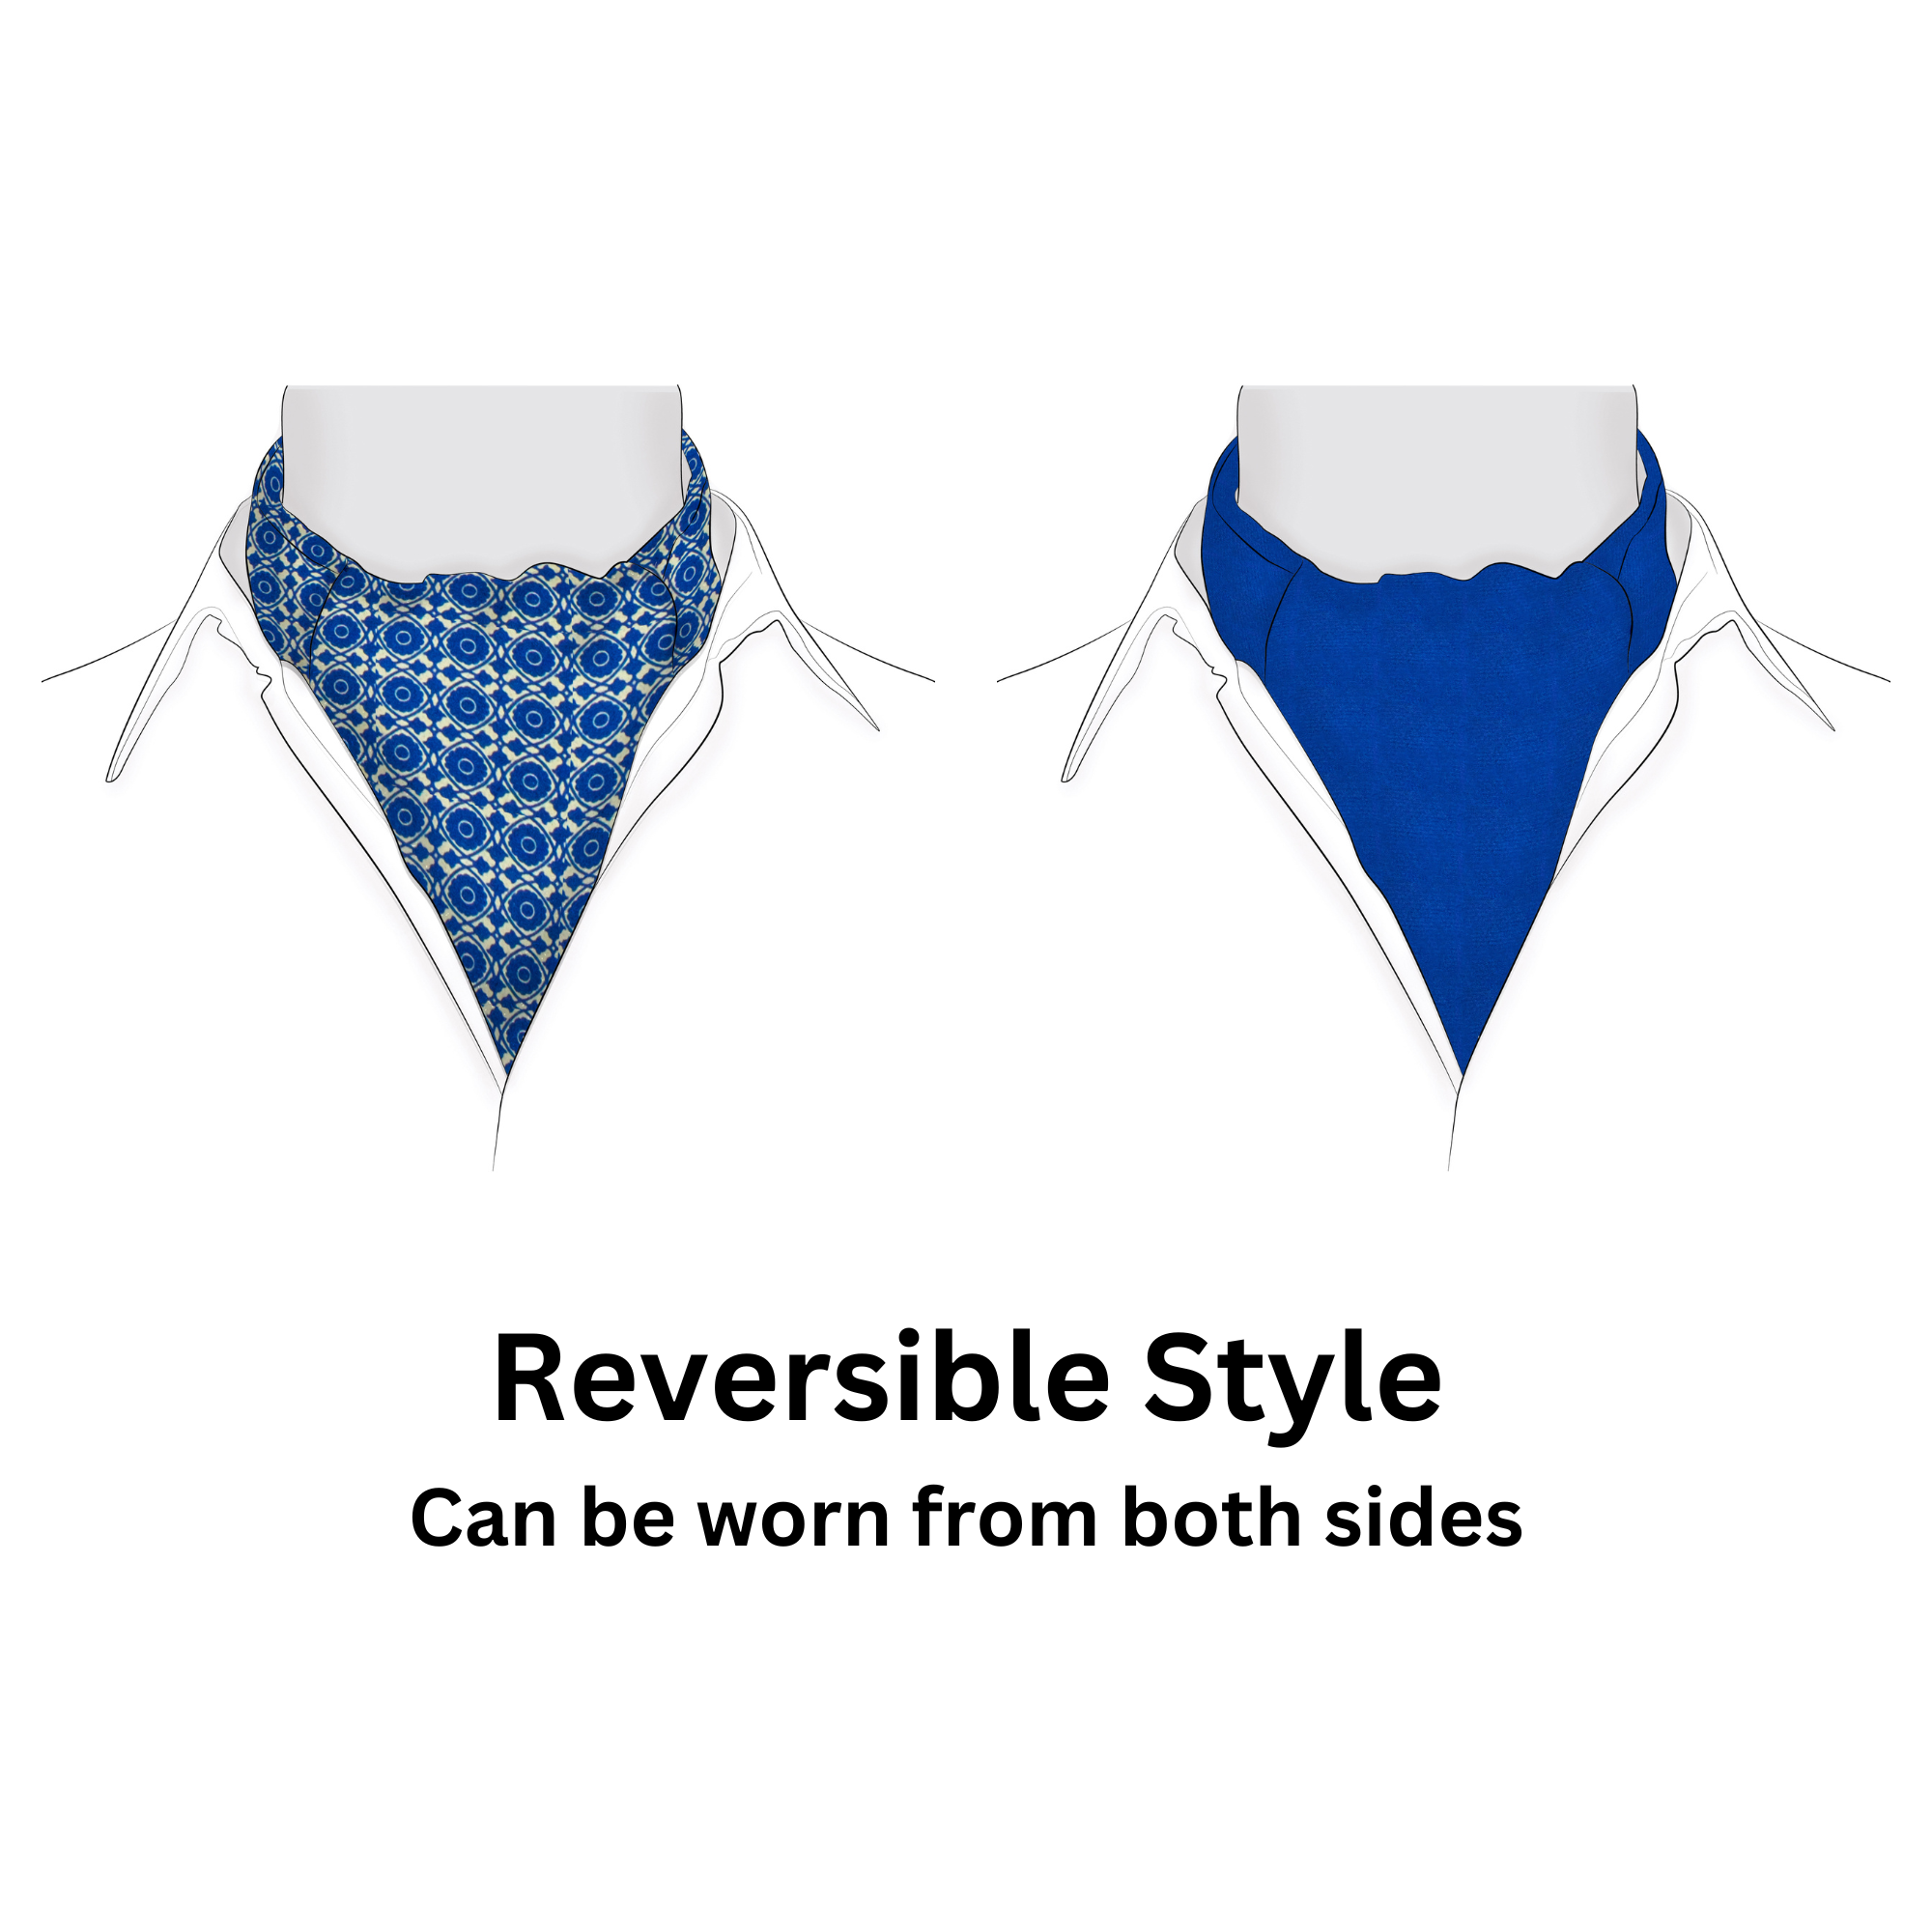 Chokore Blue & White Silk Cravat